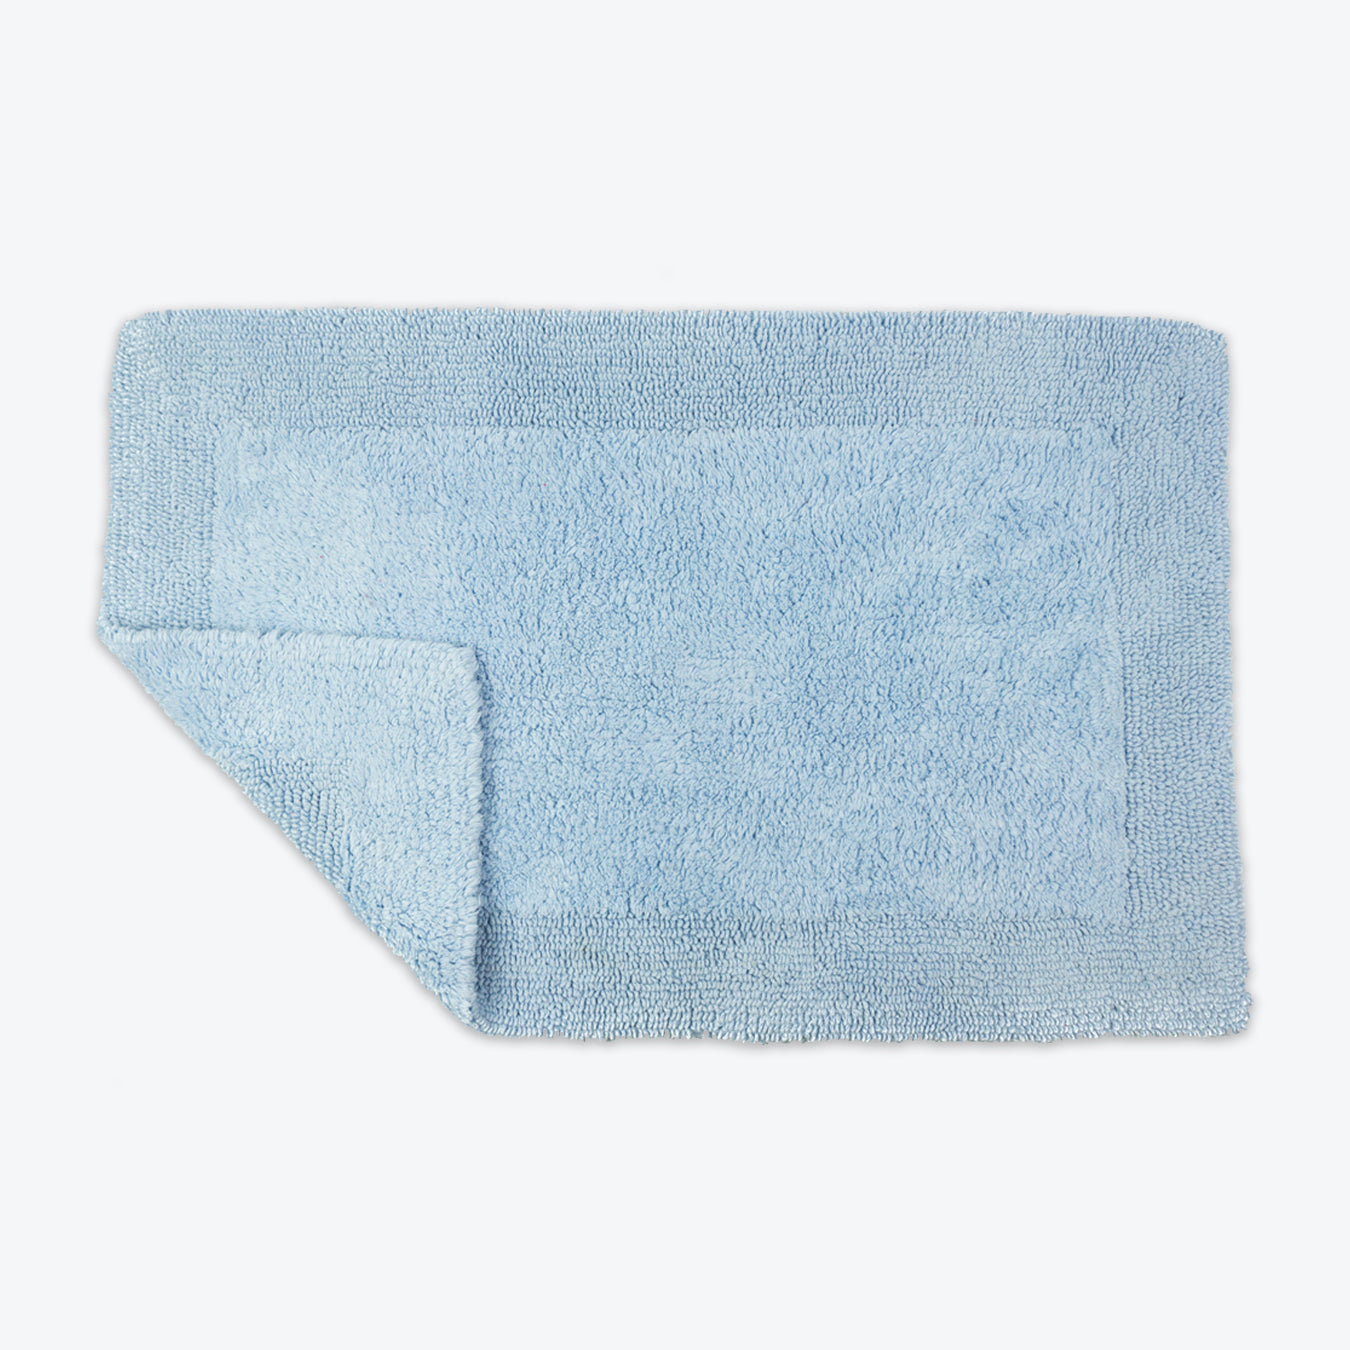 Baby Blue Reversible Cotton Large Bath Mat - Luxury Thick Bathmat